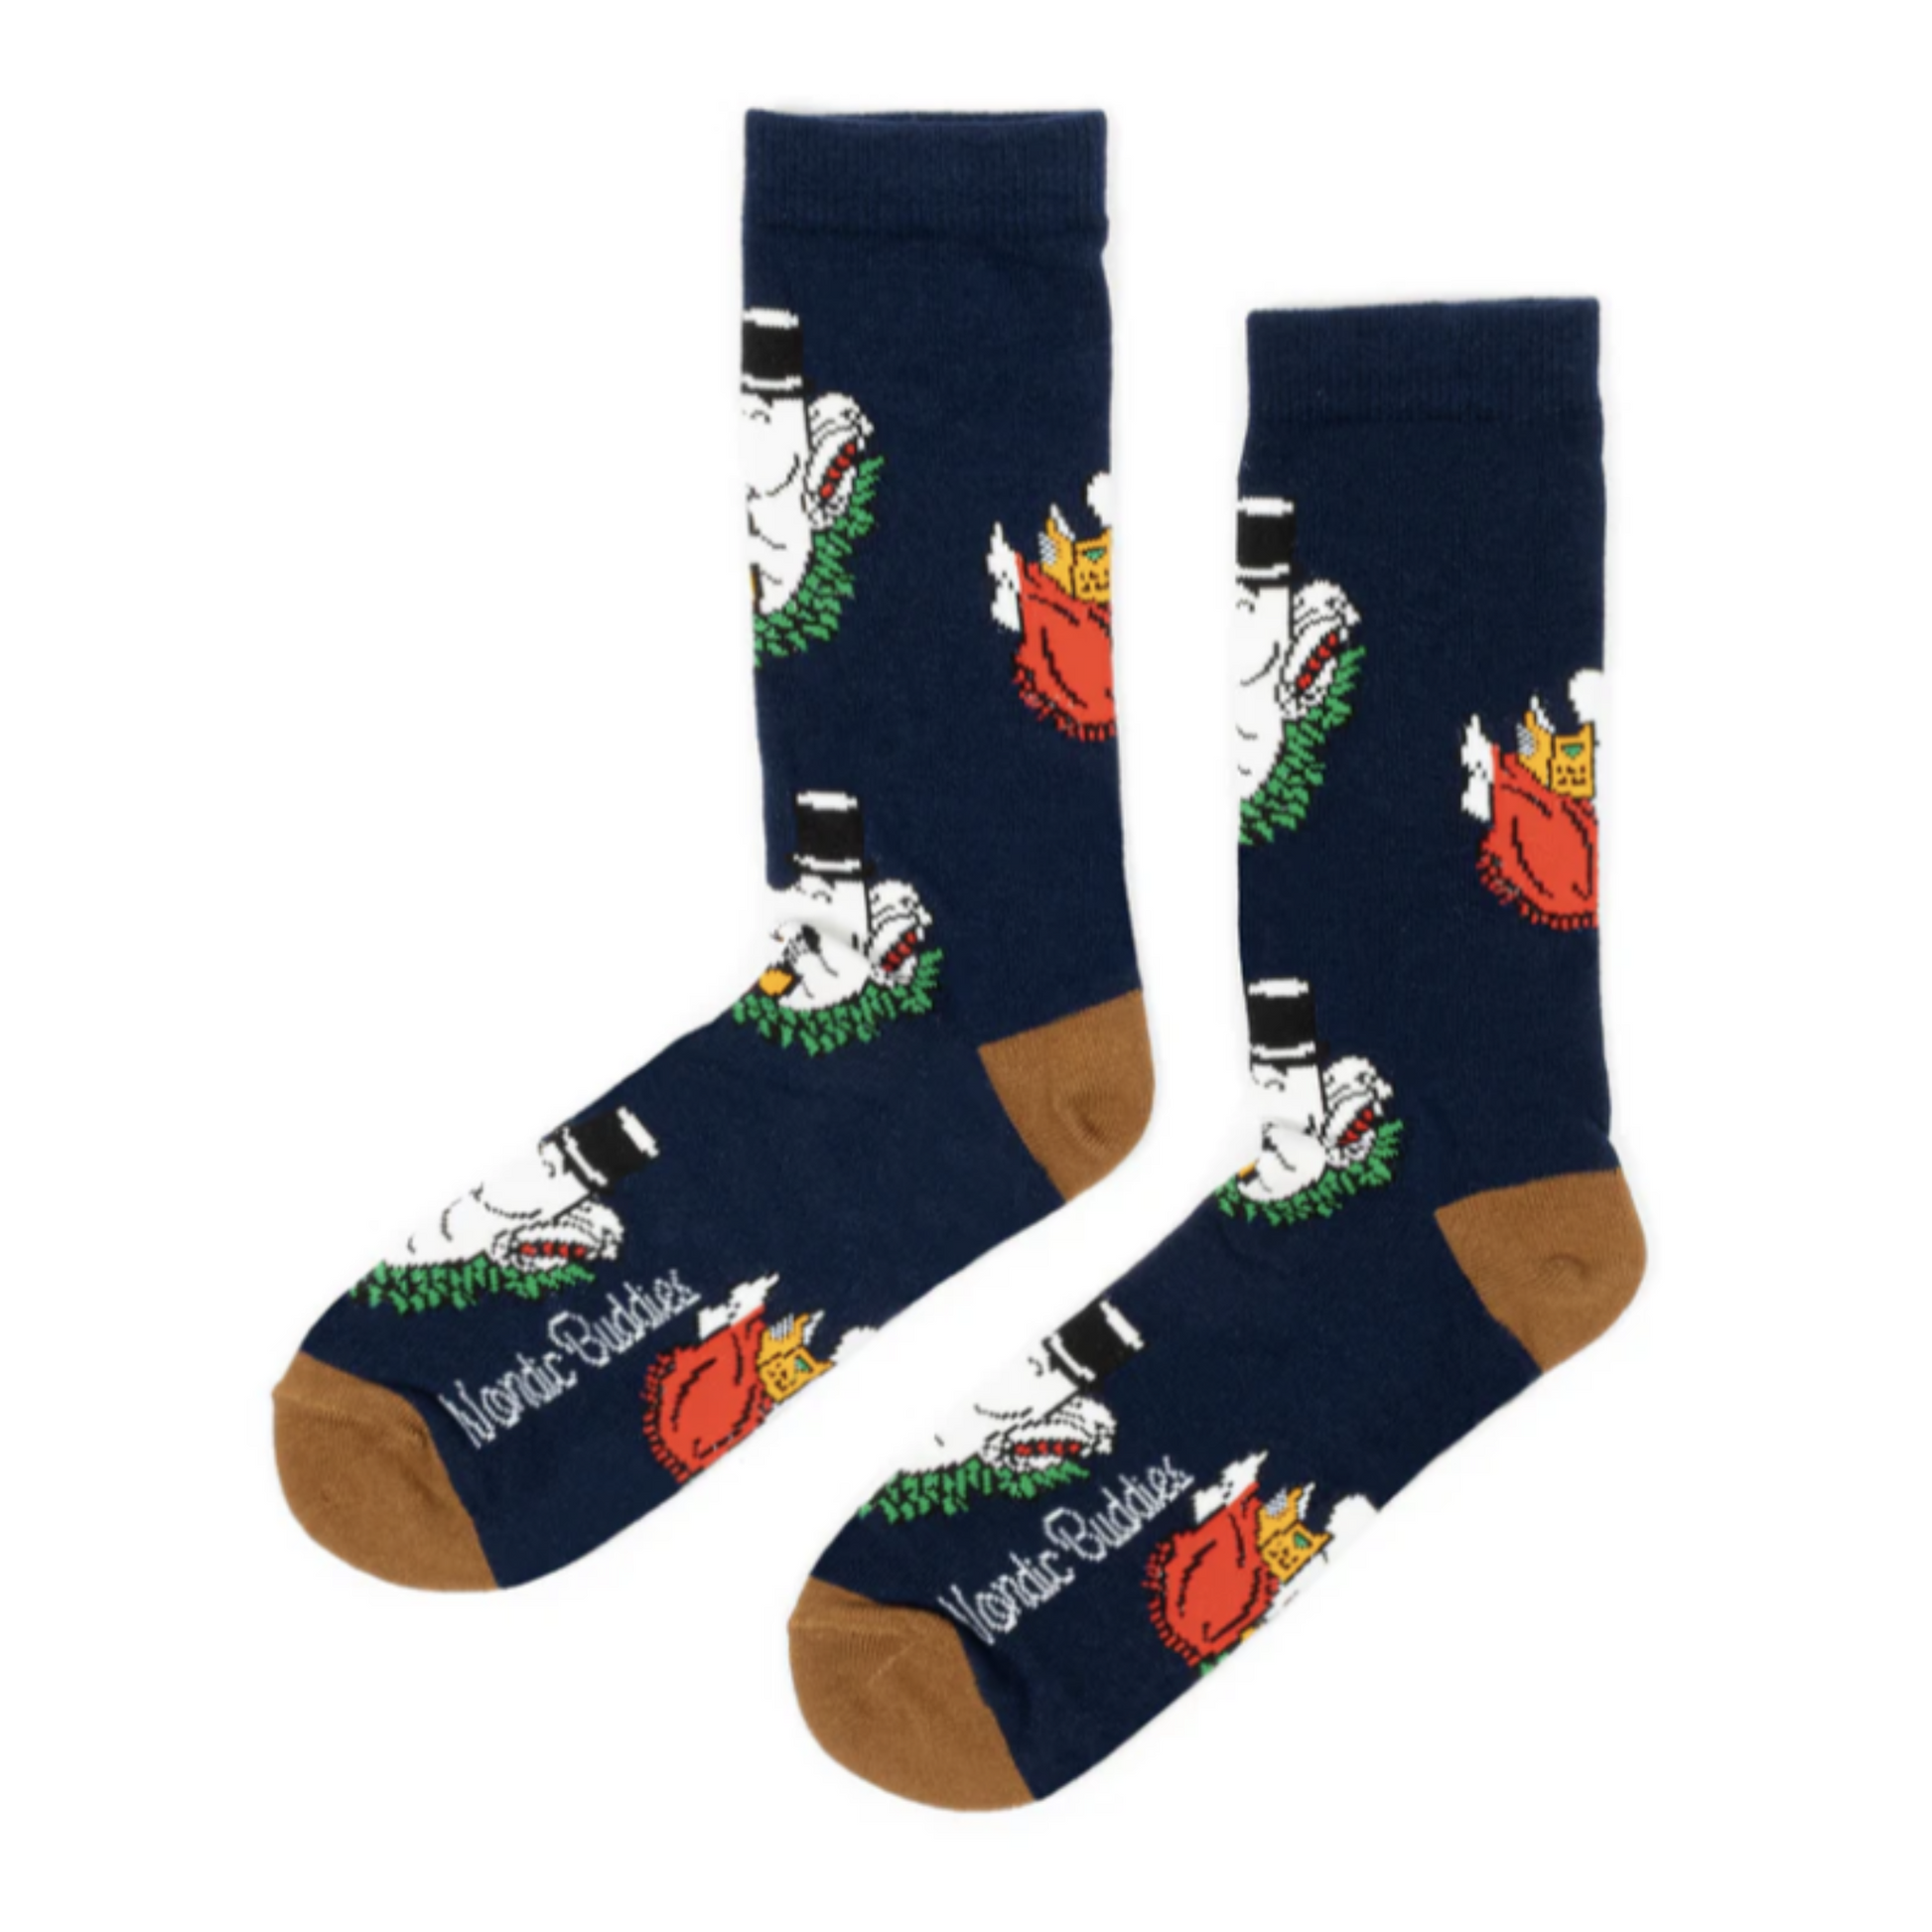 Moominpappa Chilling Men Socks, Navy (8351297143071)